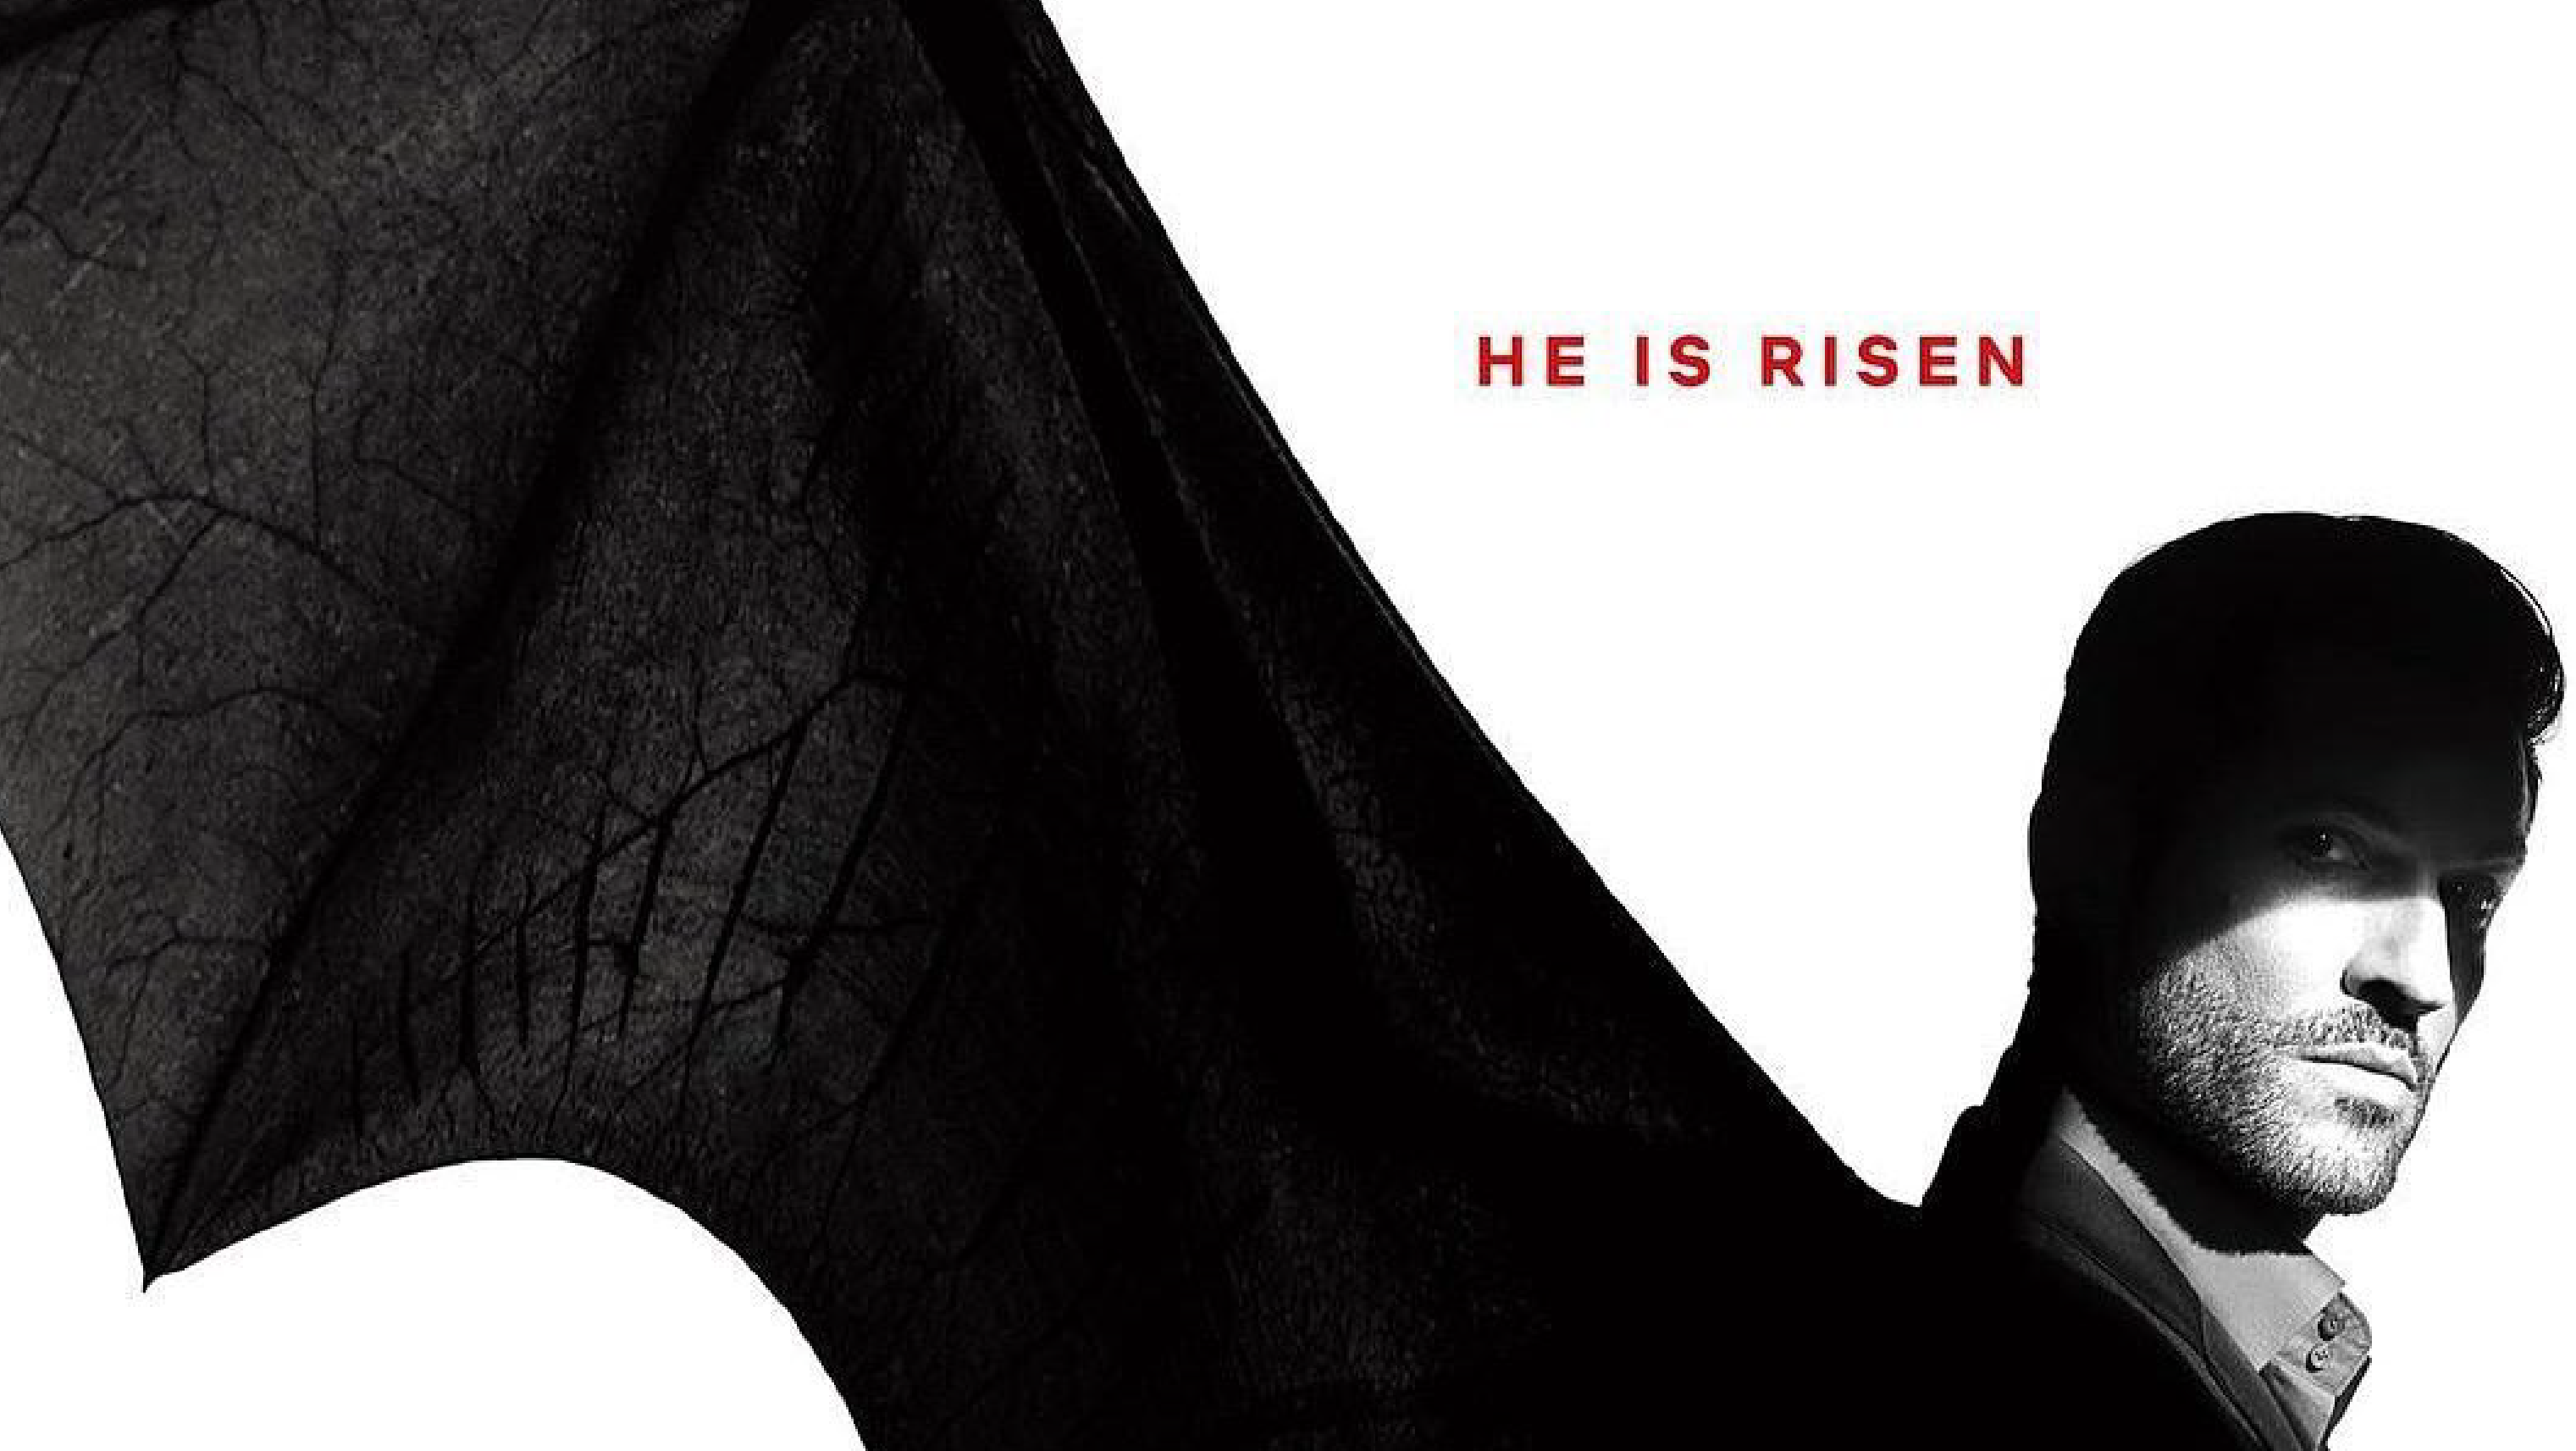 Nuevo trailer de lo nuevo de Lucifer en Netflix